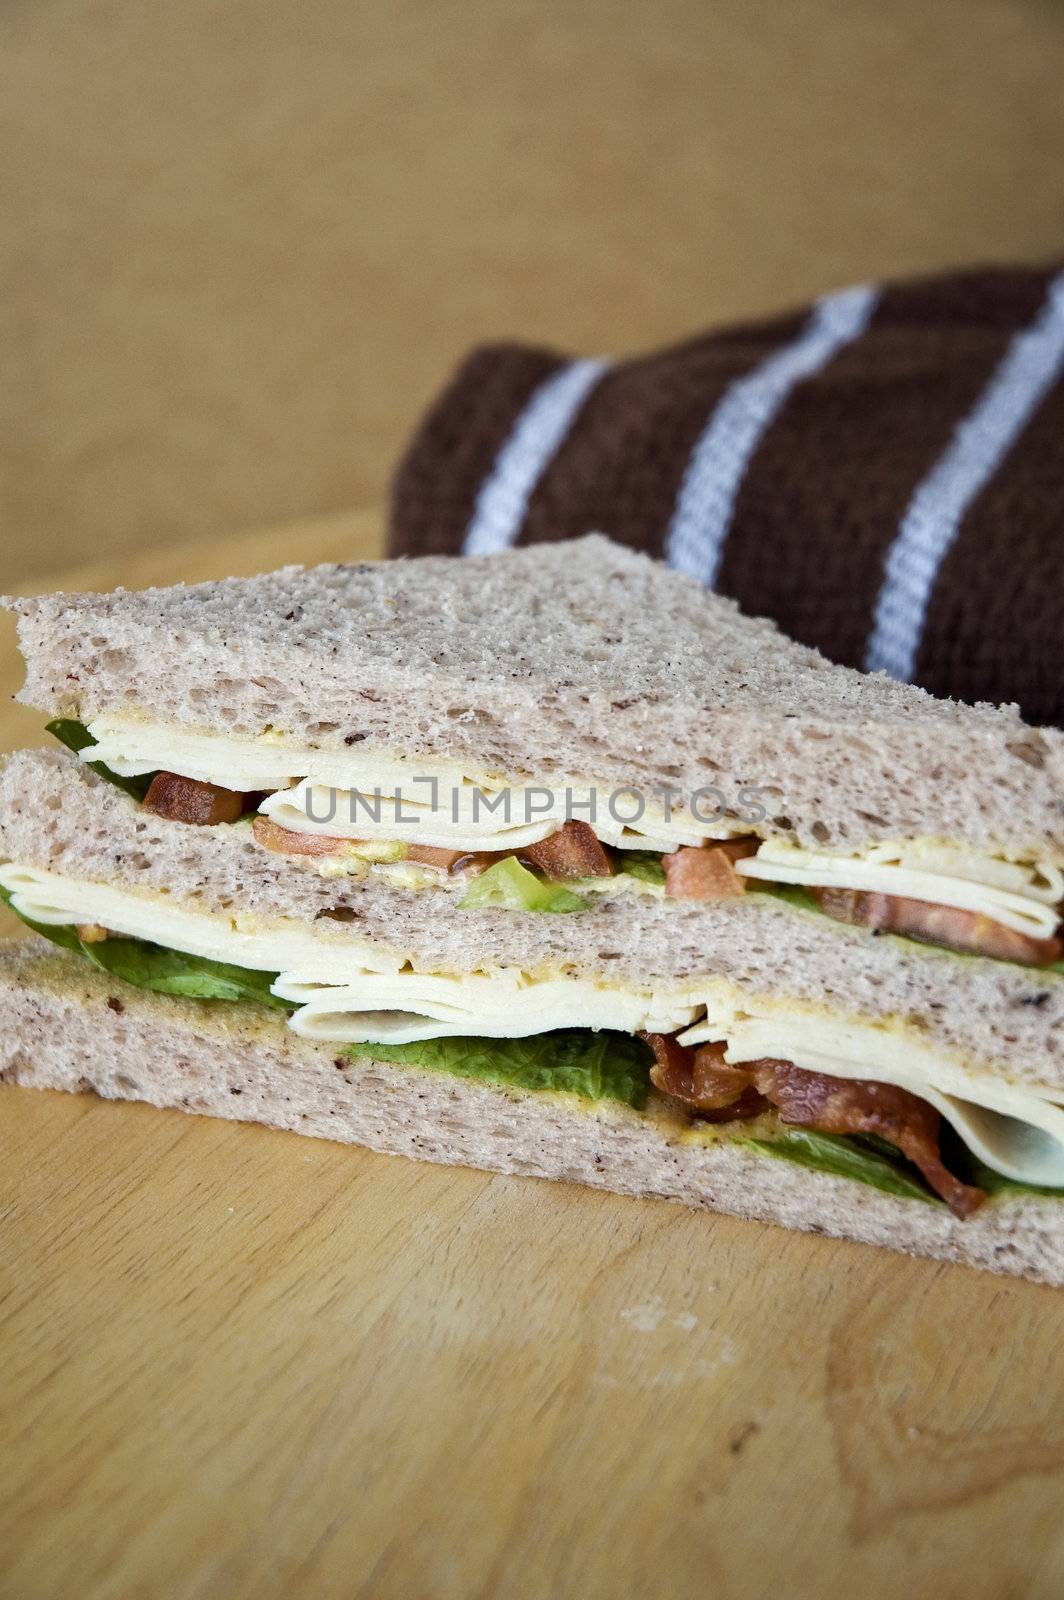 healthy gaba bread sandwich put on wooden table